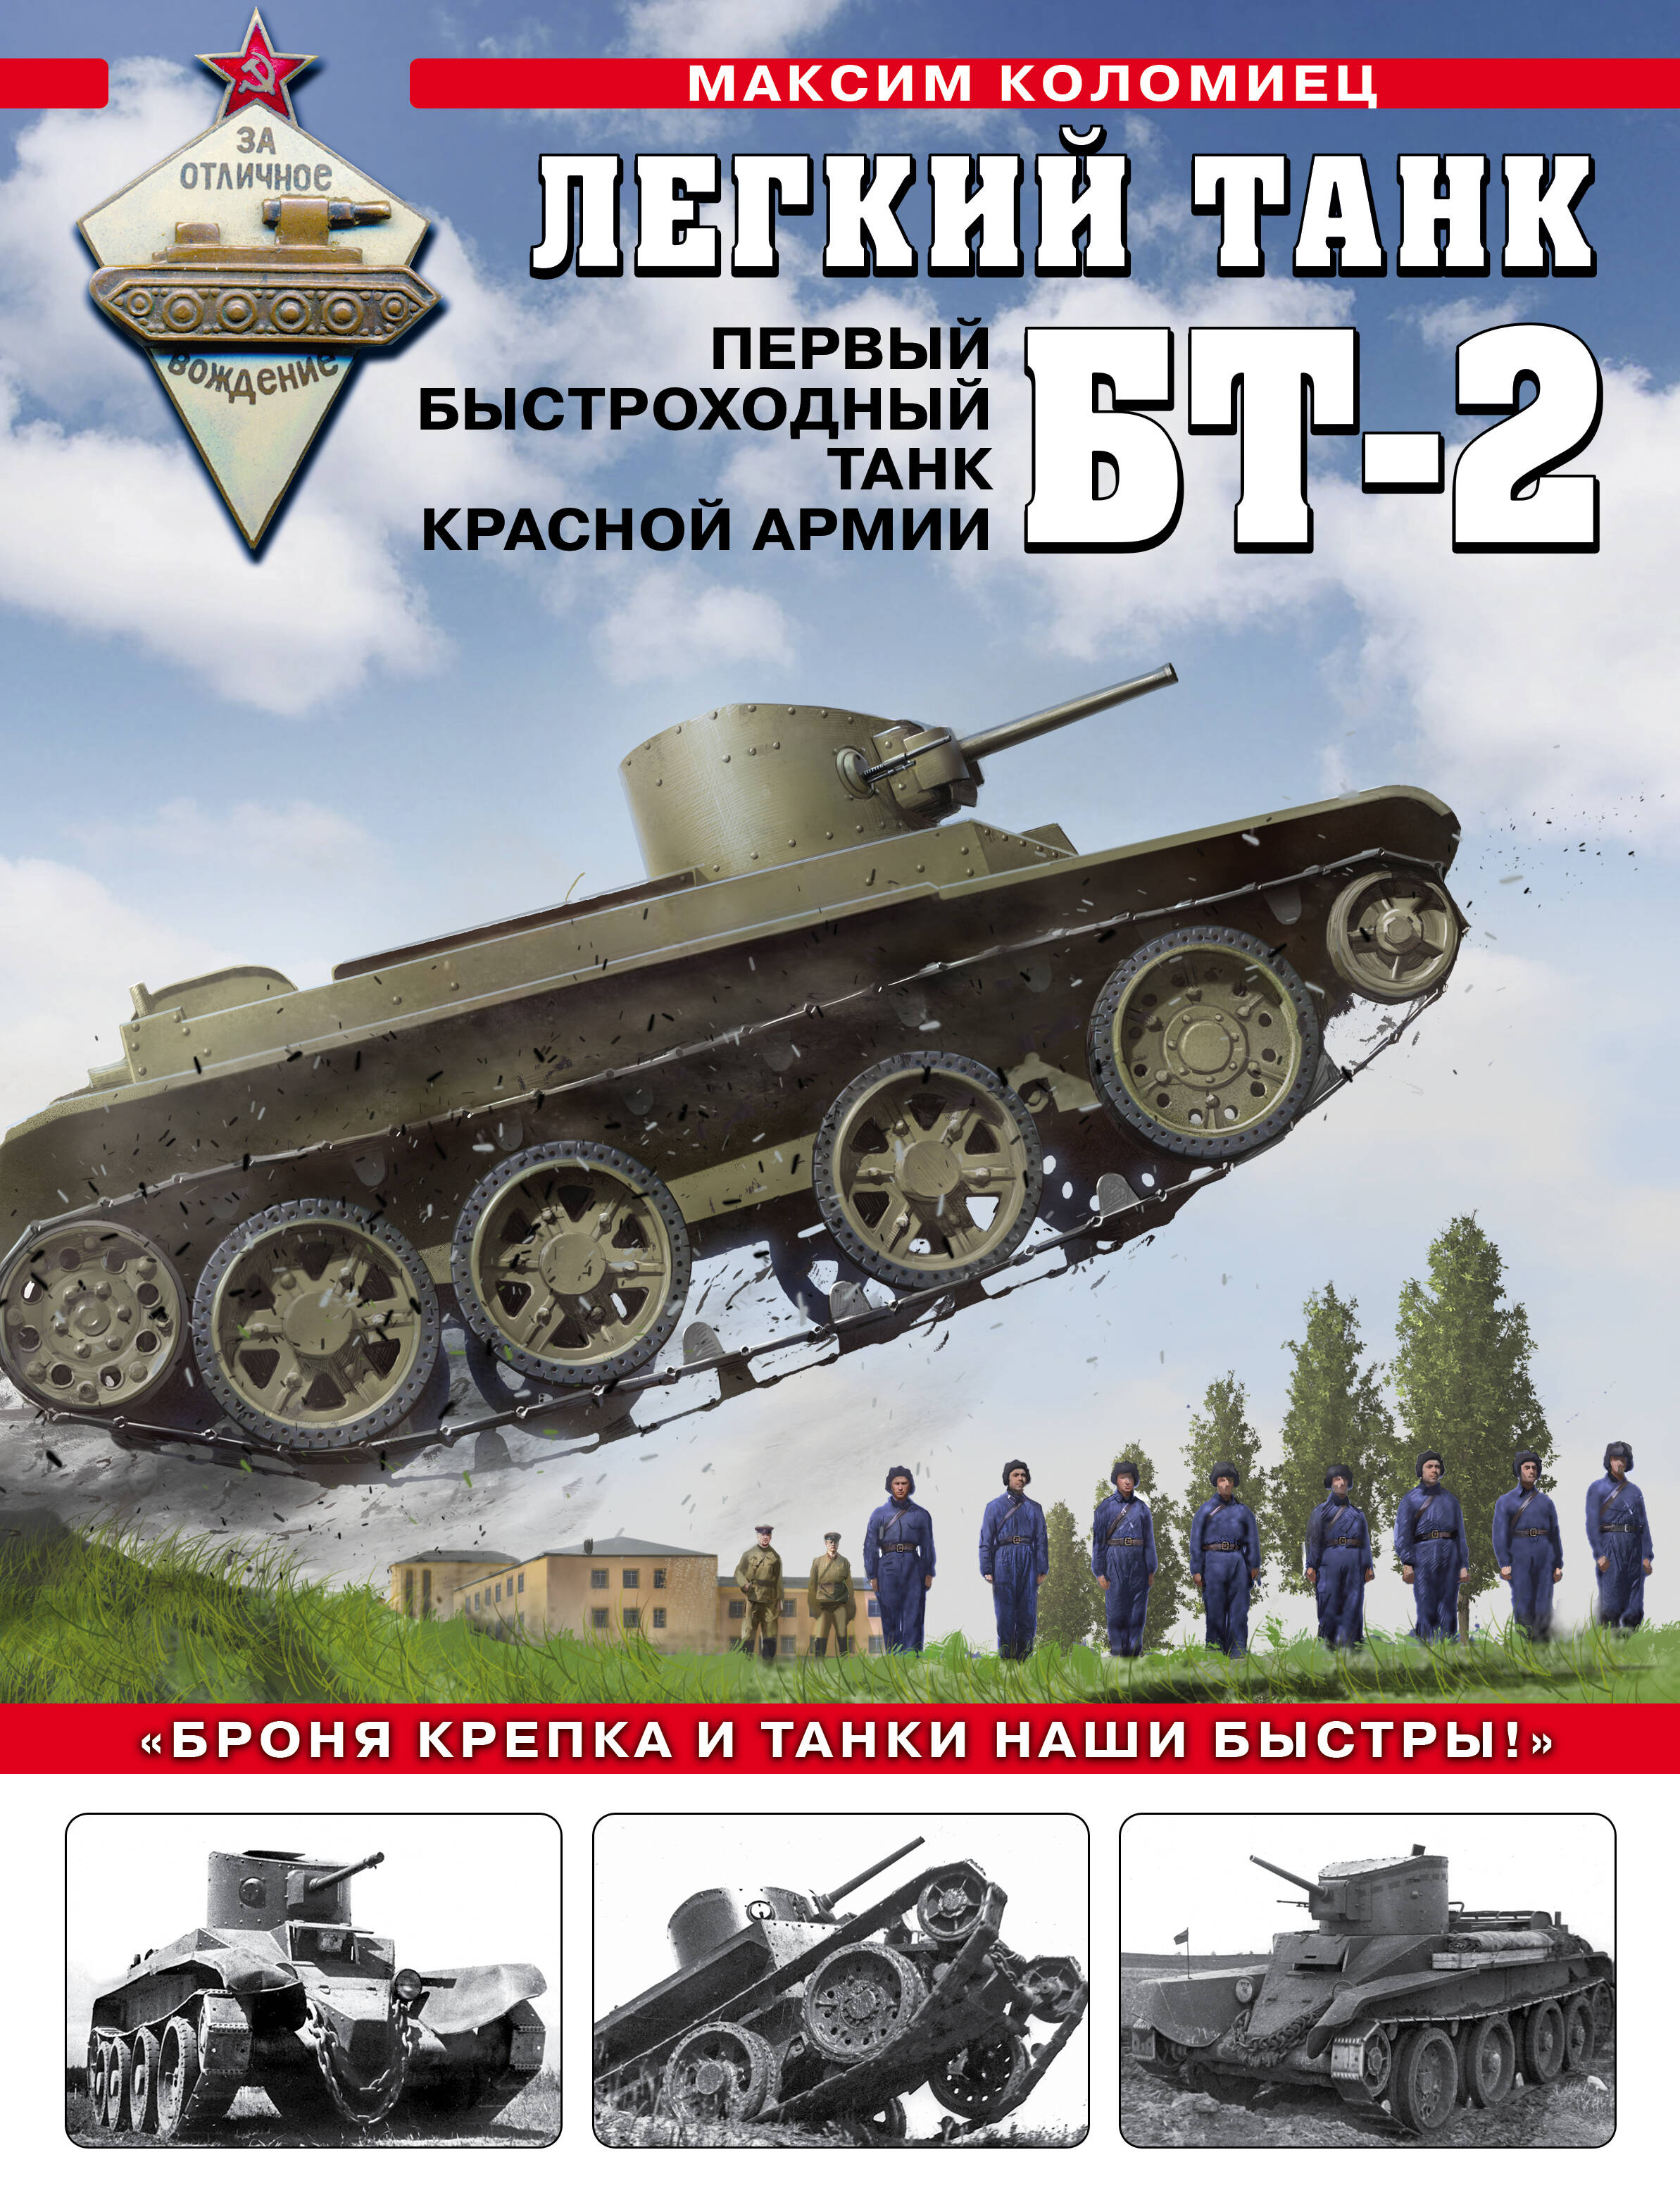 Коломиец Максим Викторович - Легкий танк БТ-2. Первый быстроходный танк Красной Армии